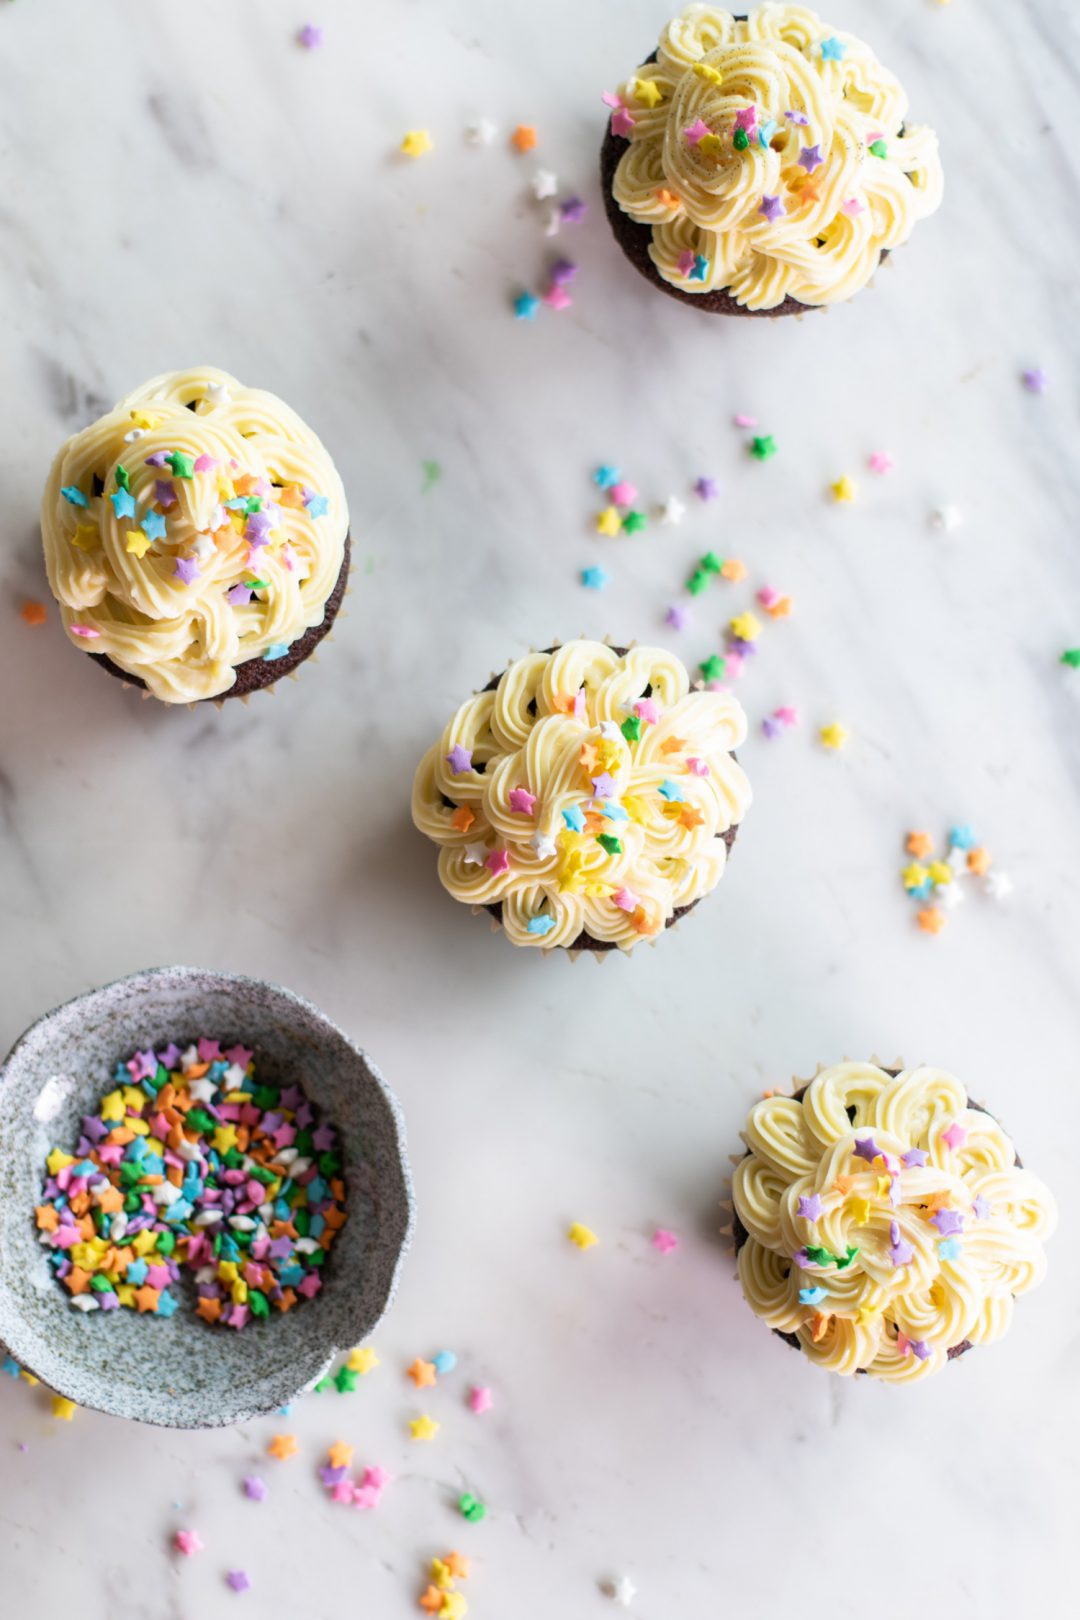 Cupcakes being prepared with sprinkles.